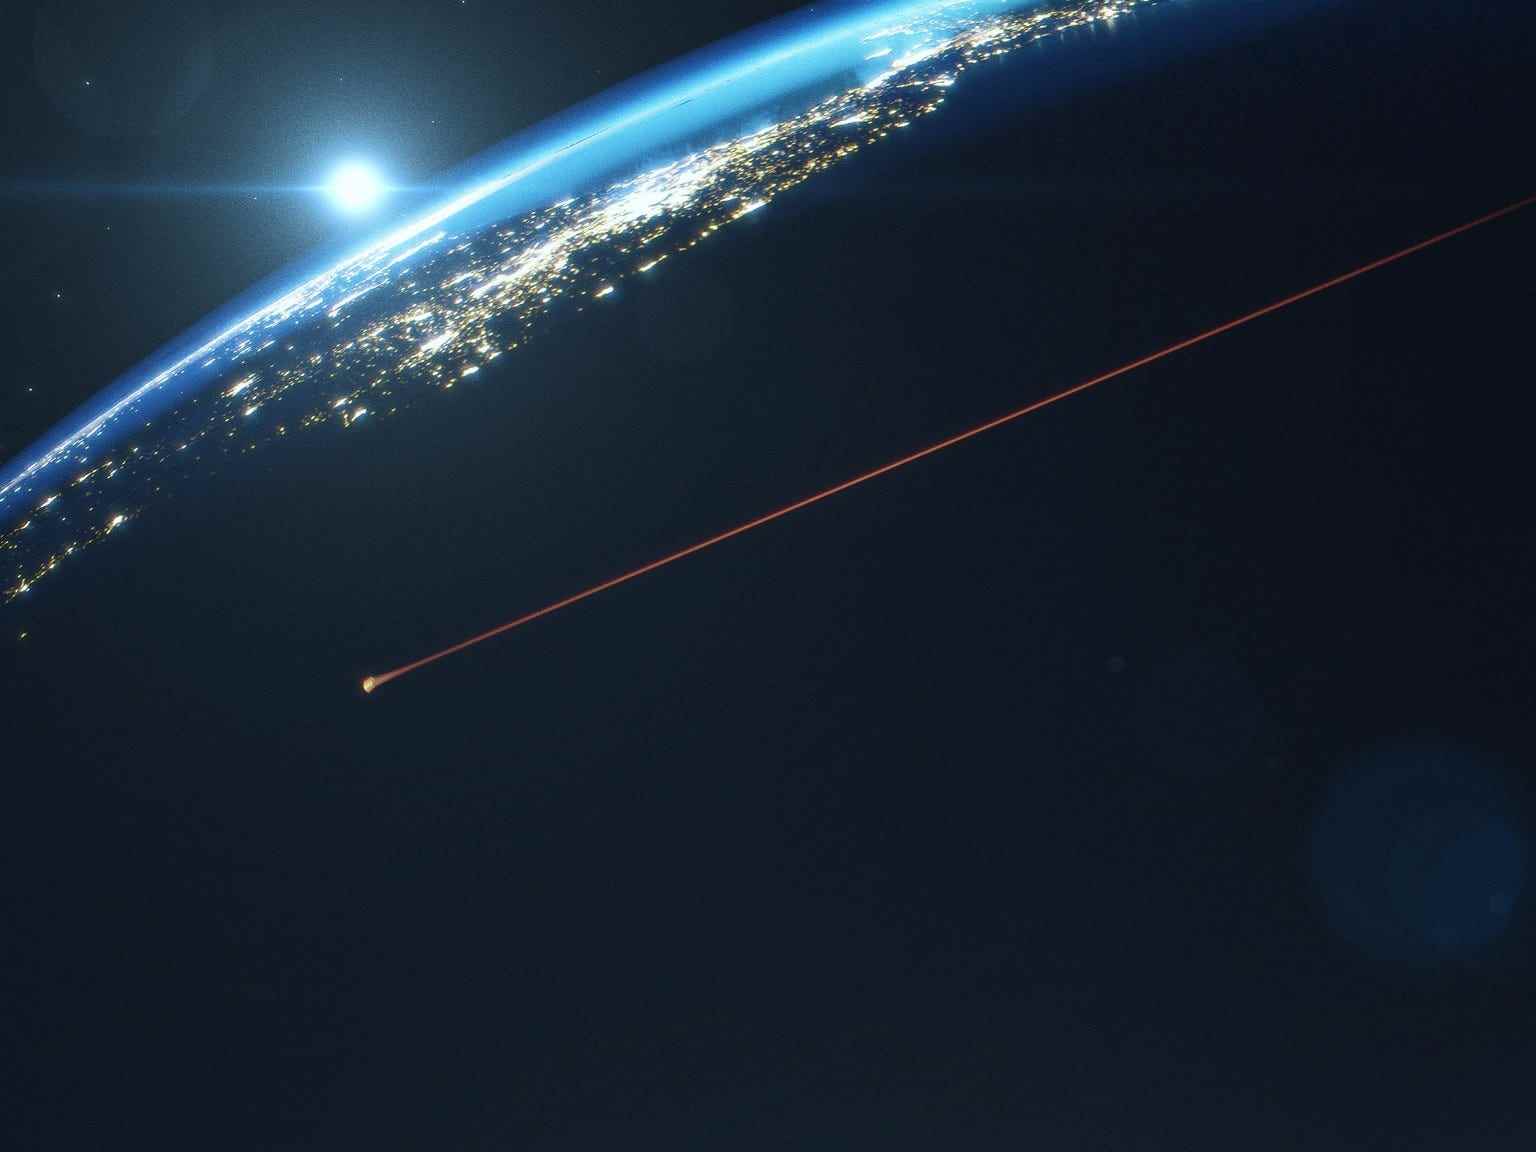 Abbildung zeigt den Feuerball der Orion-Kapsel, der auf die Erde zurast